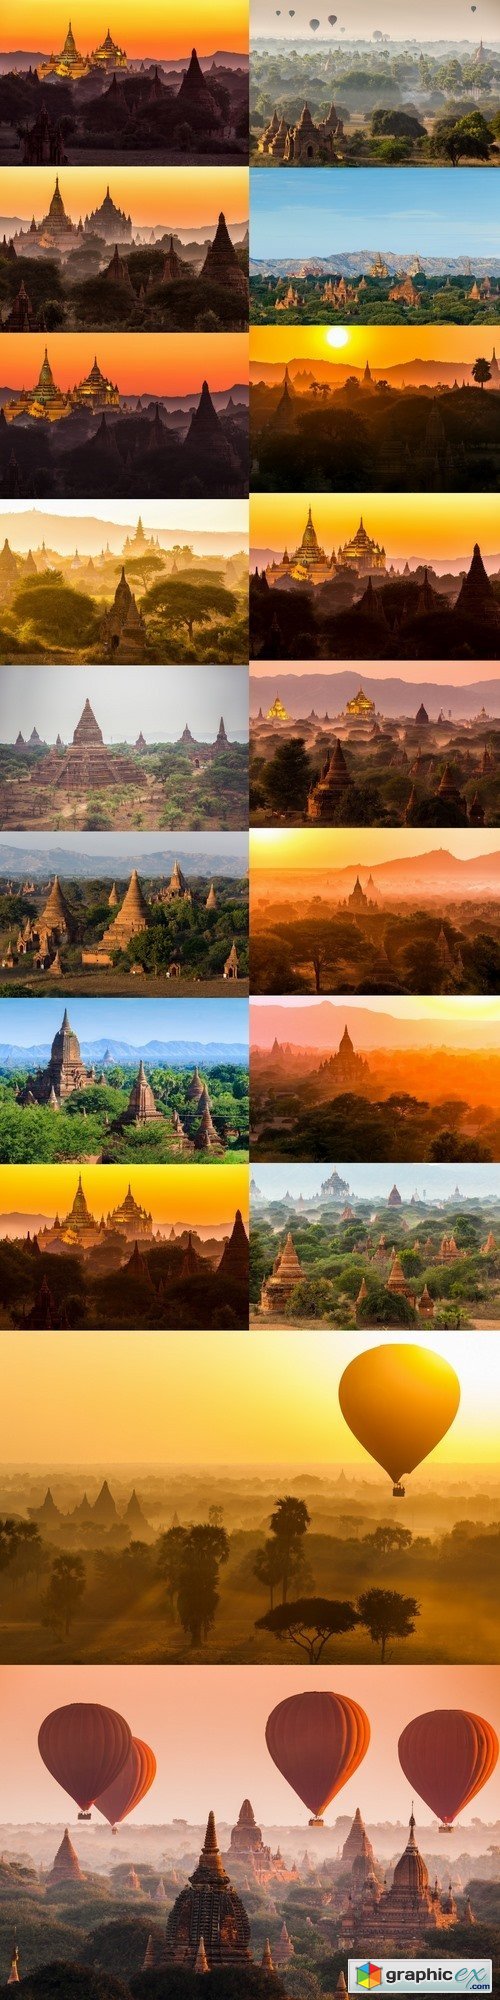 The Temples of Bagan, Mandalay, Myanmar